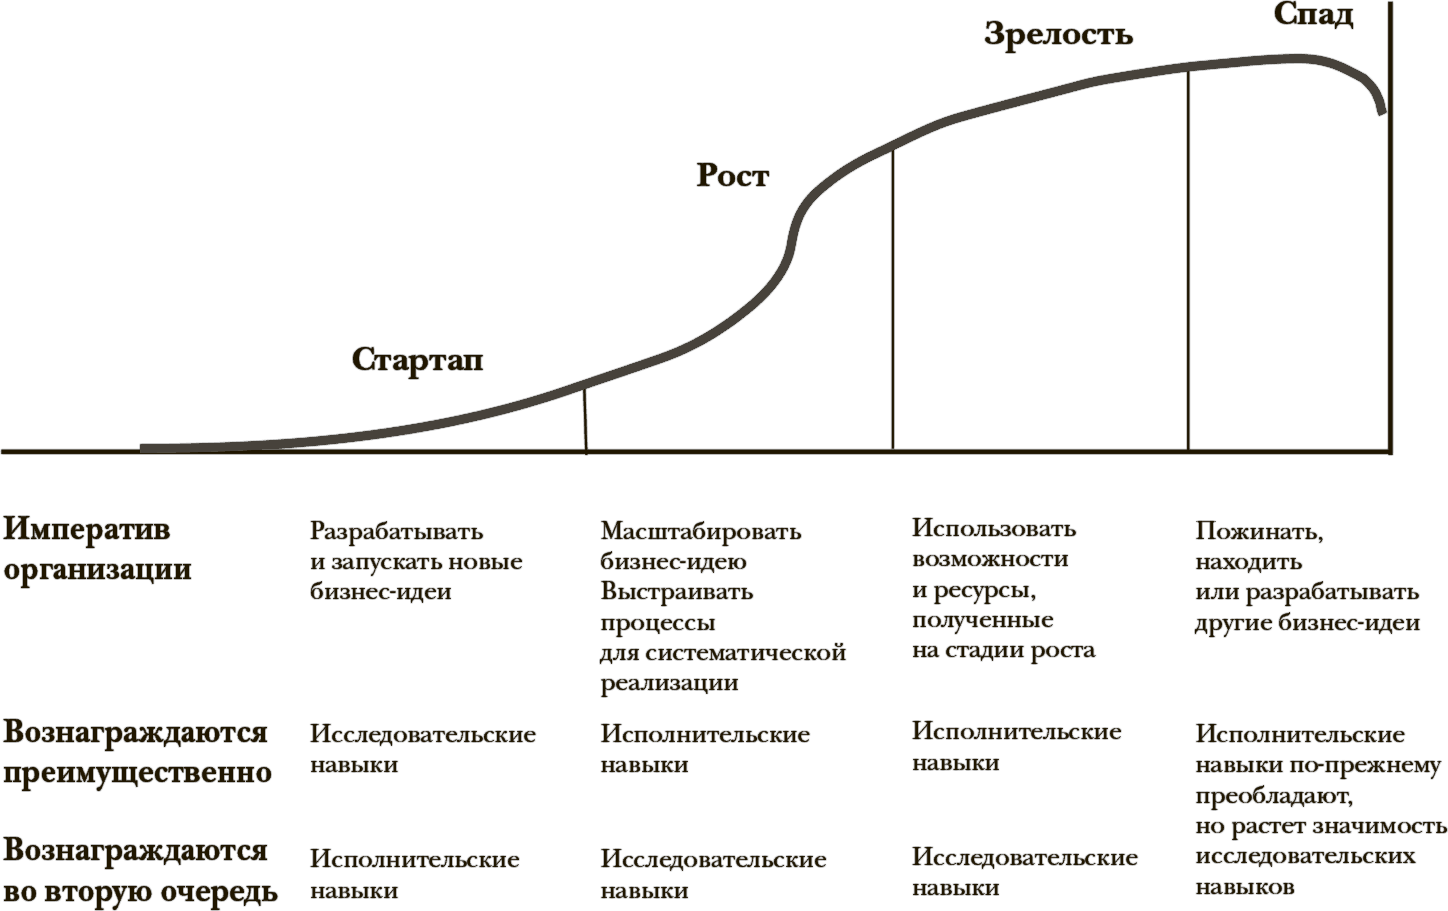 Жизненный цикл тема. Этапы жизненного цикла фирмы. Стадии жизненного цикла организации (предприятия). Фаз жизненного цикла развития. Стадии жизненного цикла стартапа.